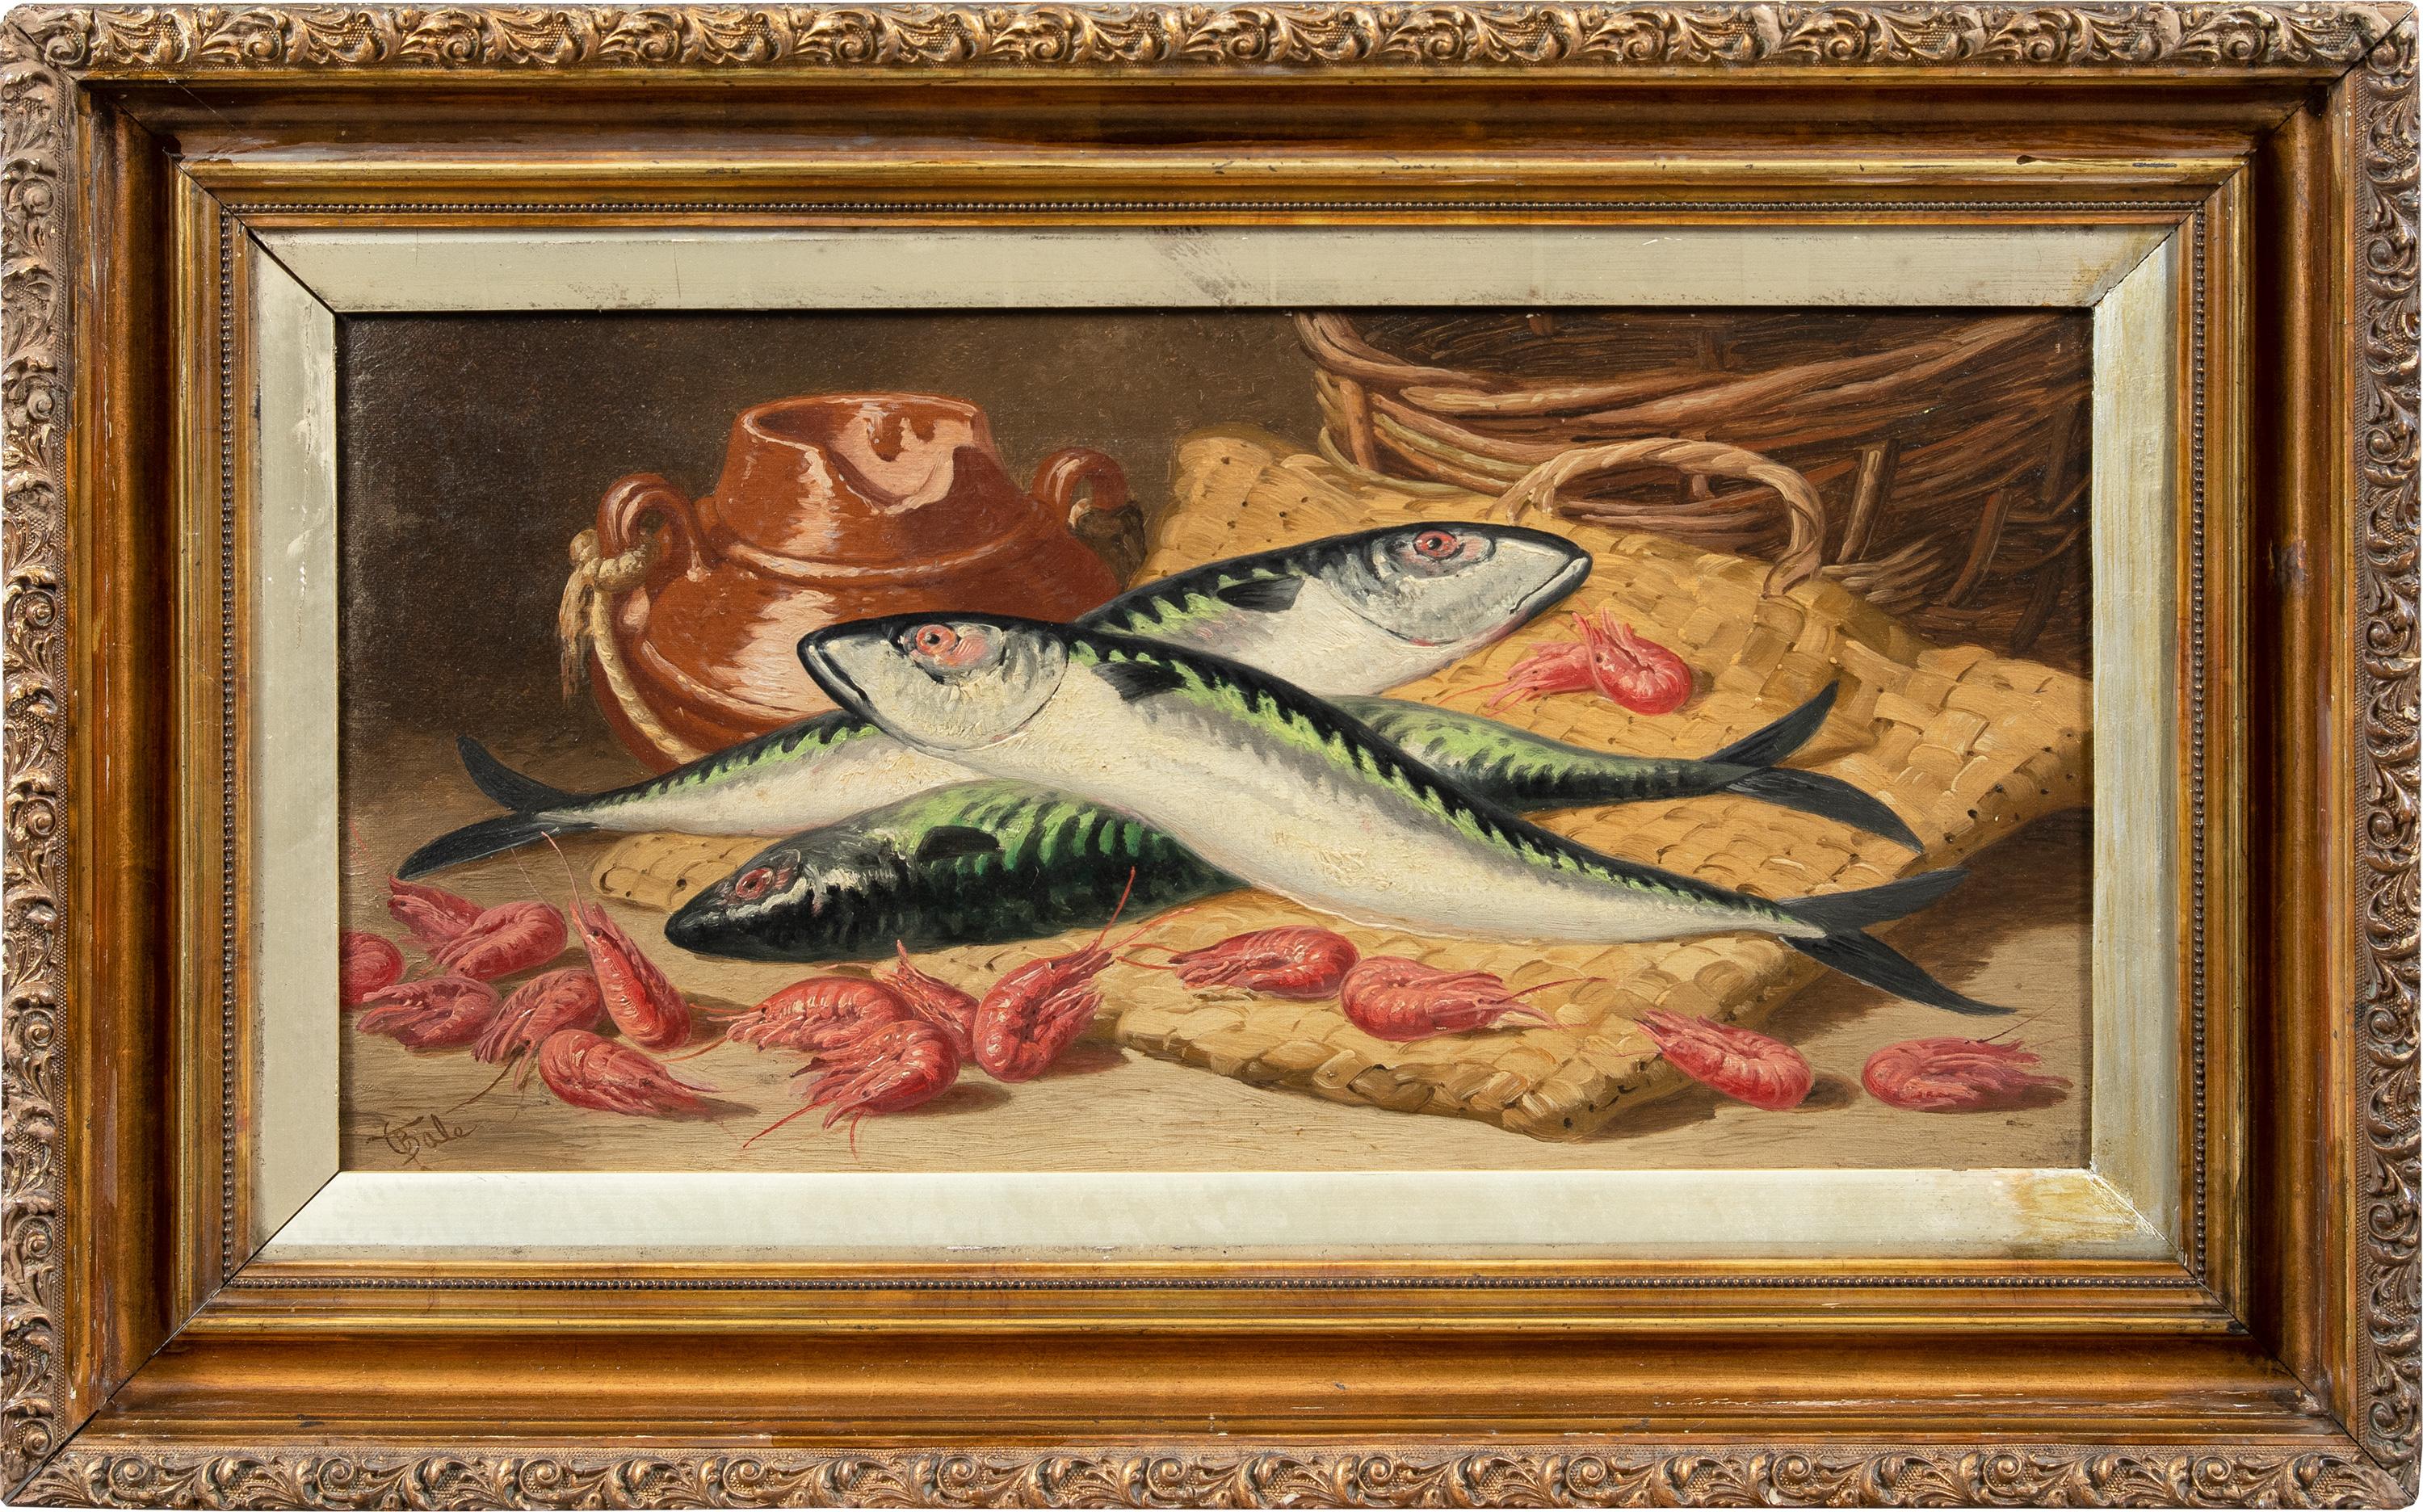 Charles Bale (britannique) - Peinture de nature morte du XIXe siècle - Poissons et crevettes